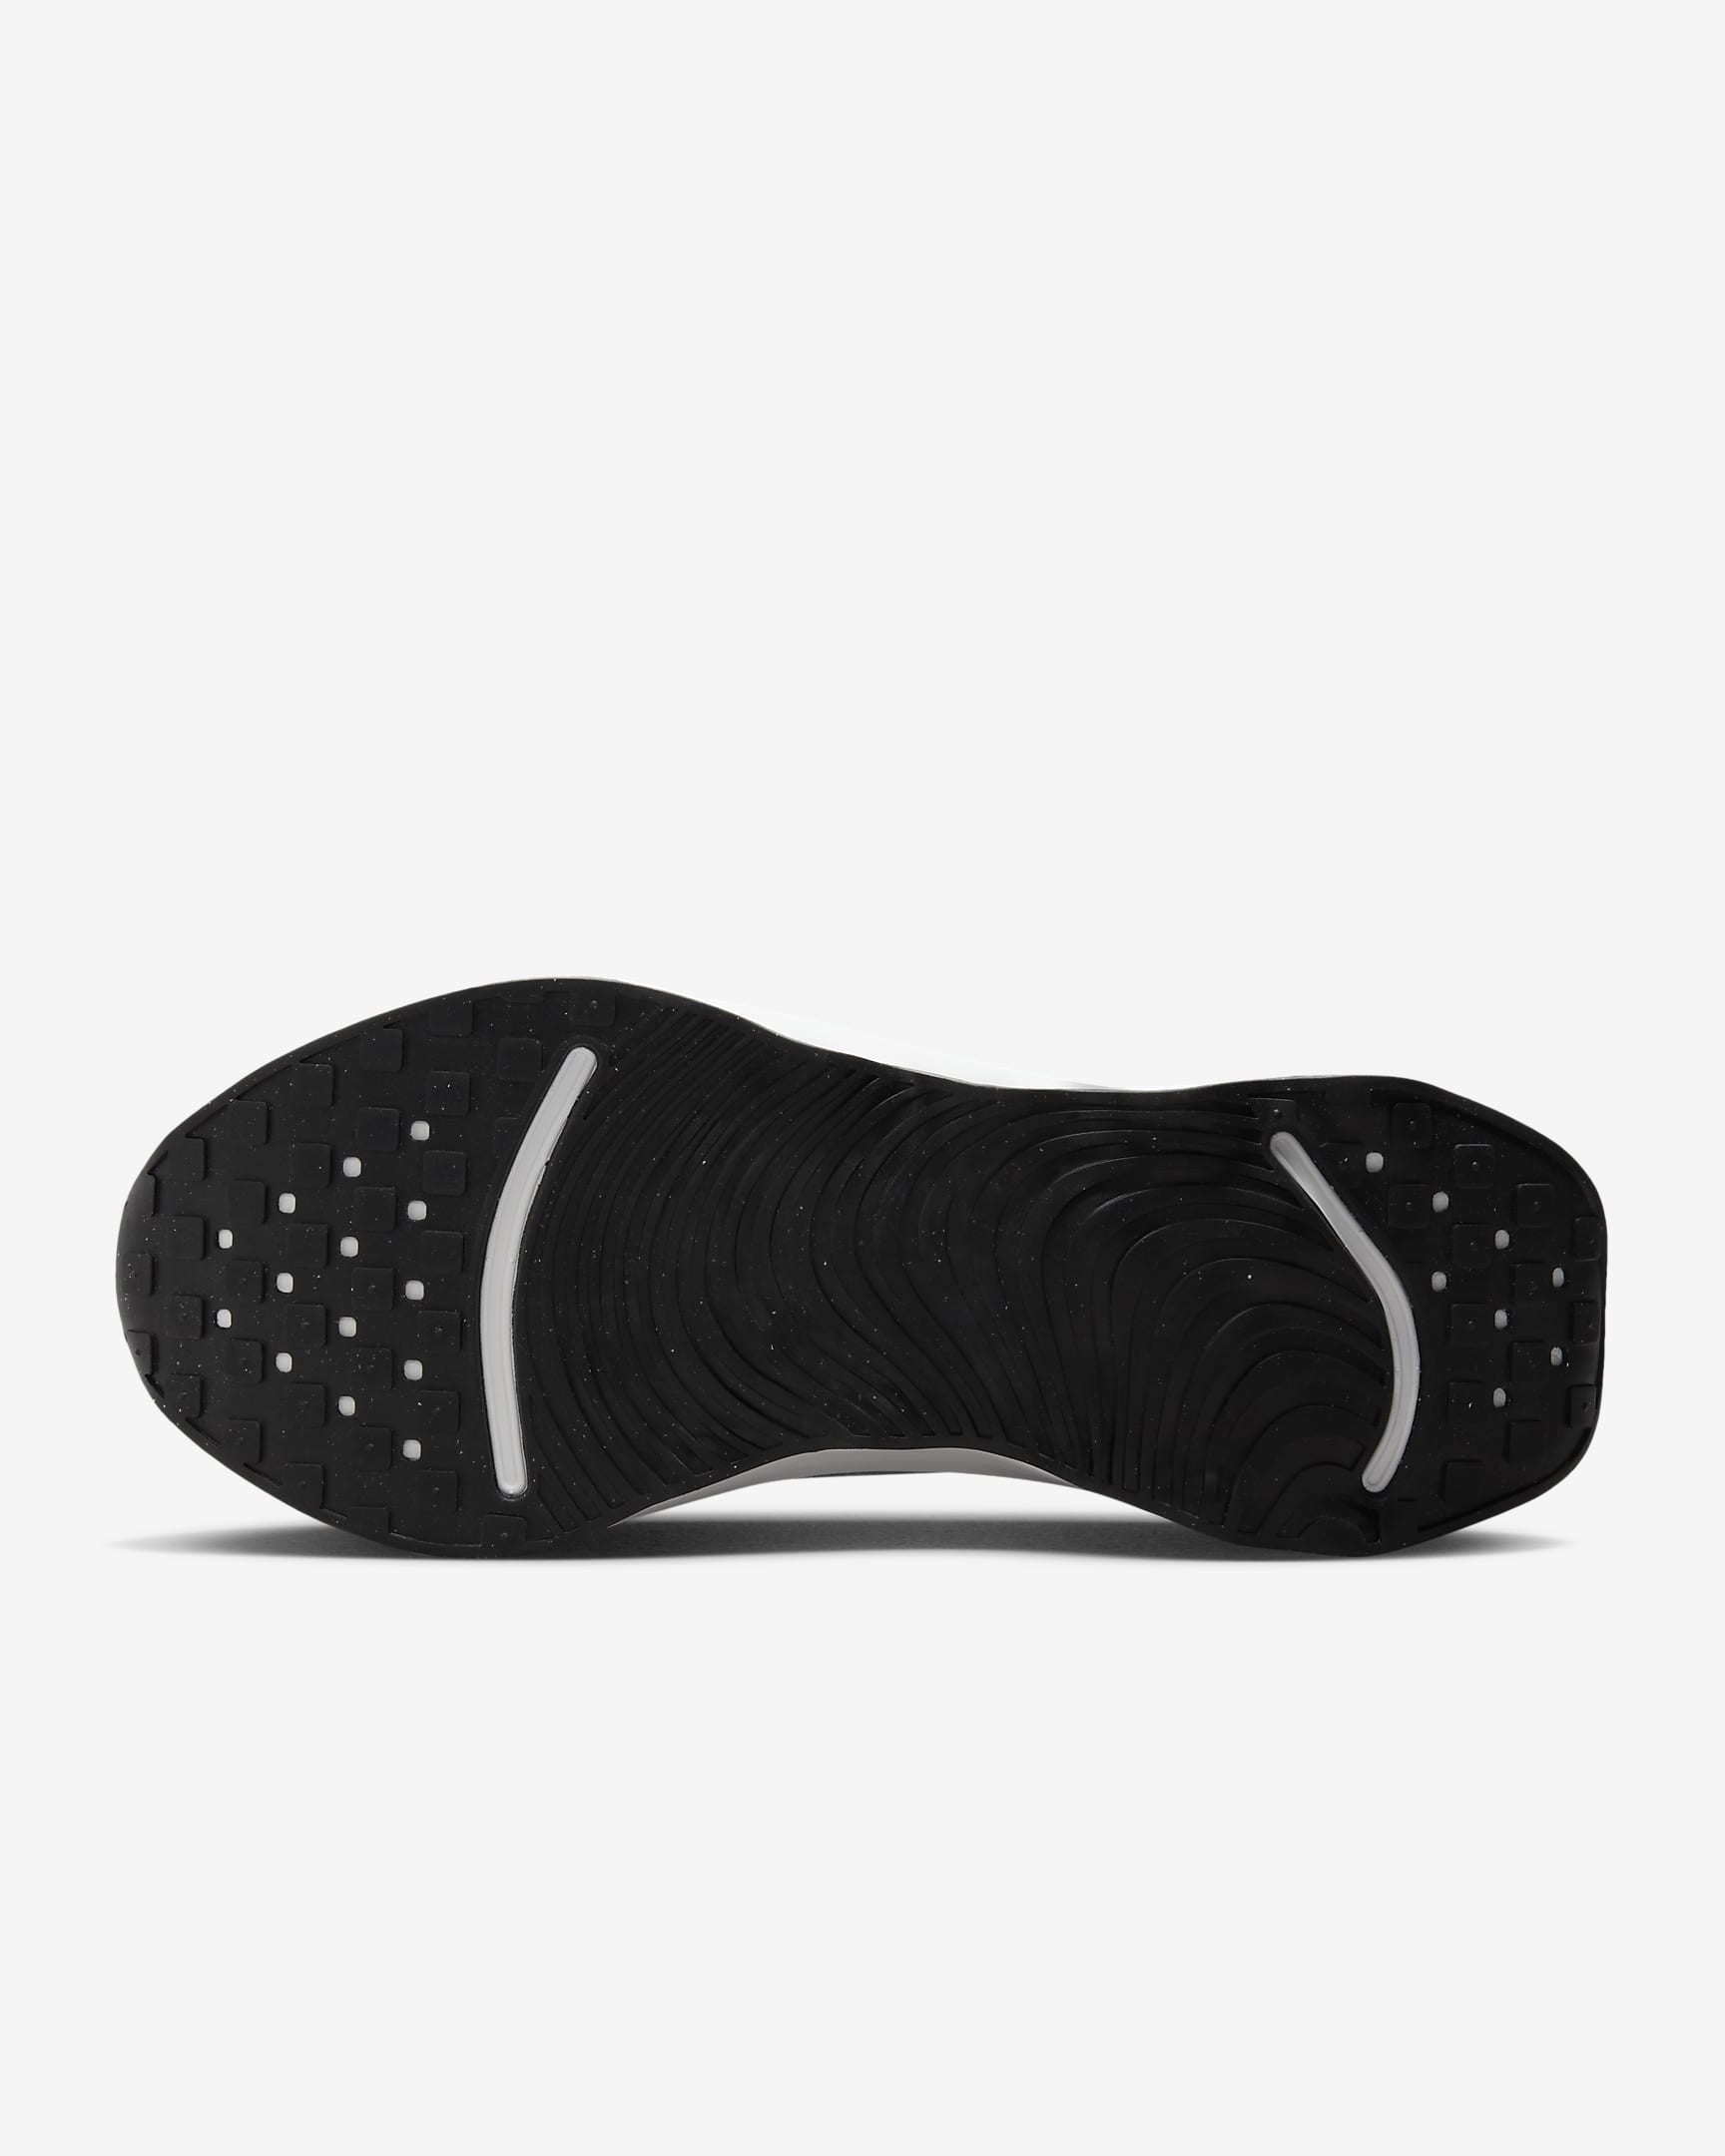 Calzado de caminata para hombre Nike Motiva. Nike.com